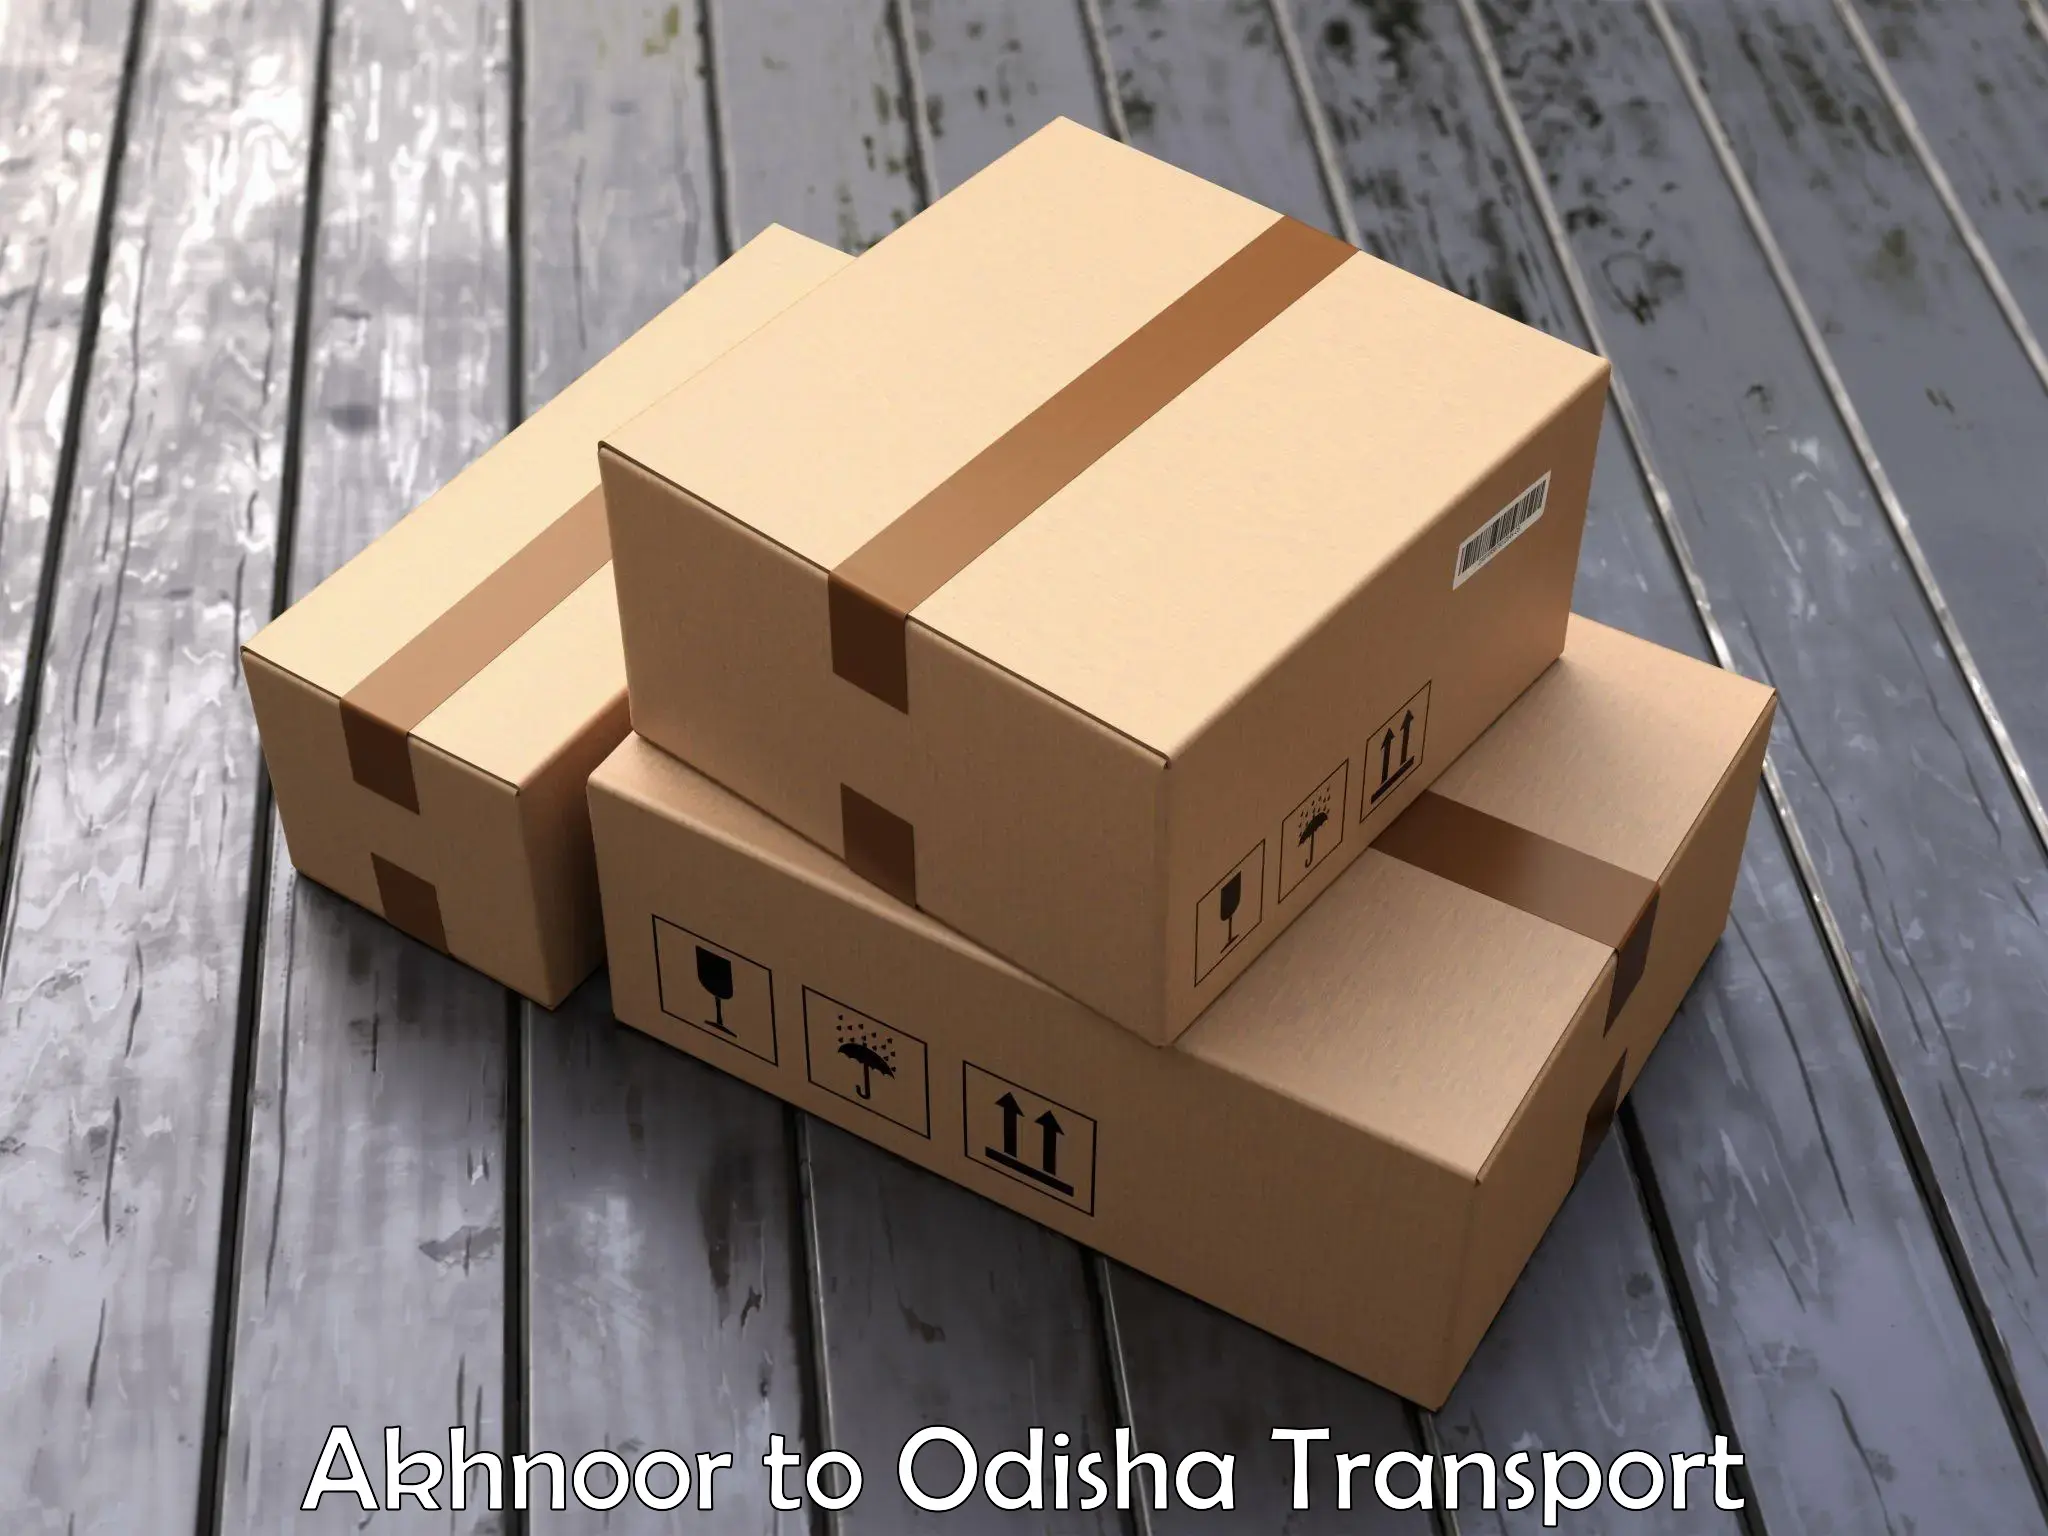 Nationwide transport services Akhnoor to Daspalla